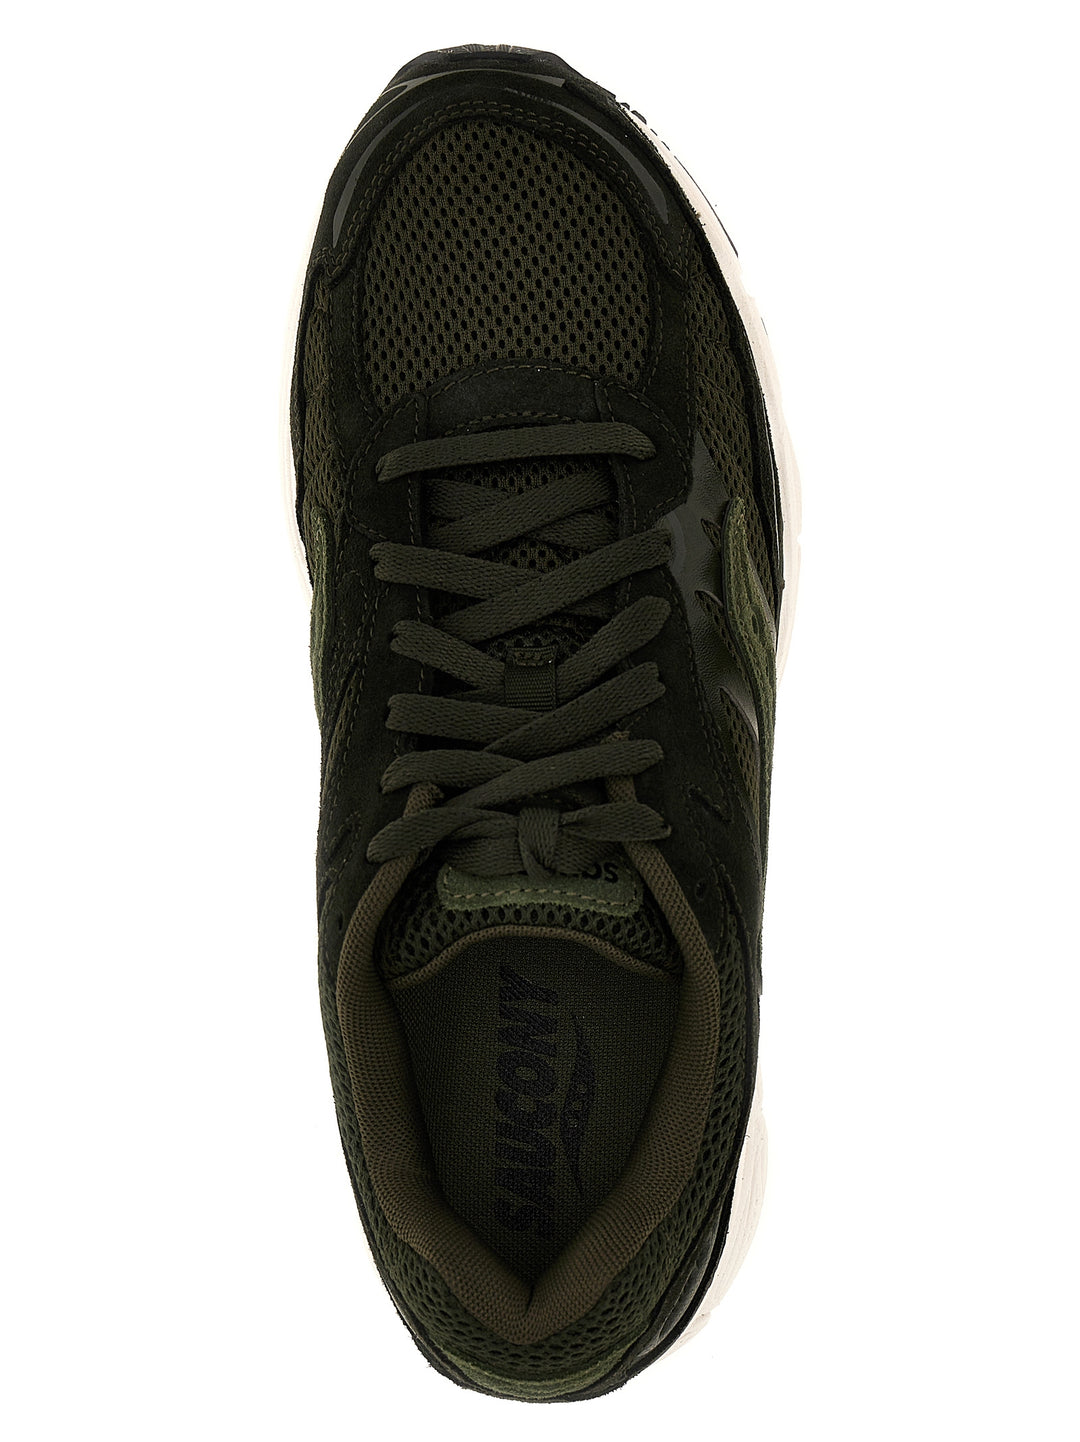 Progrid Omni 9 Sneakers Verde